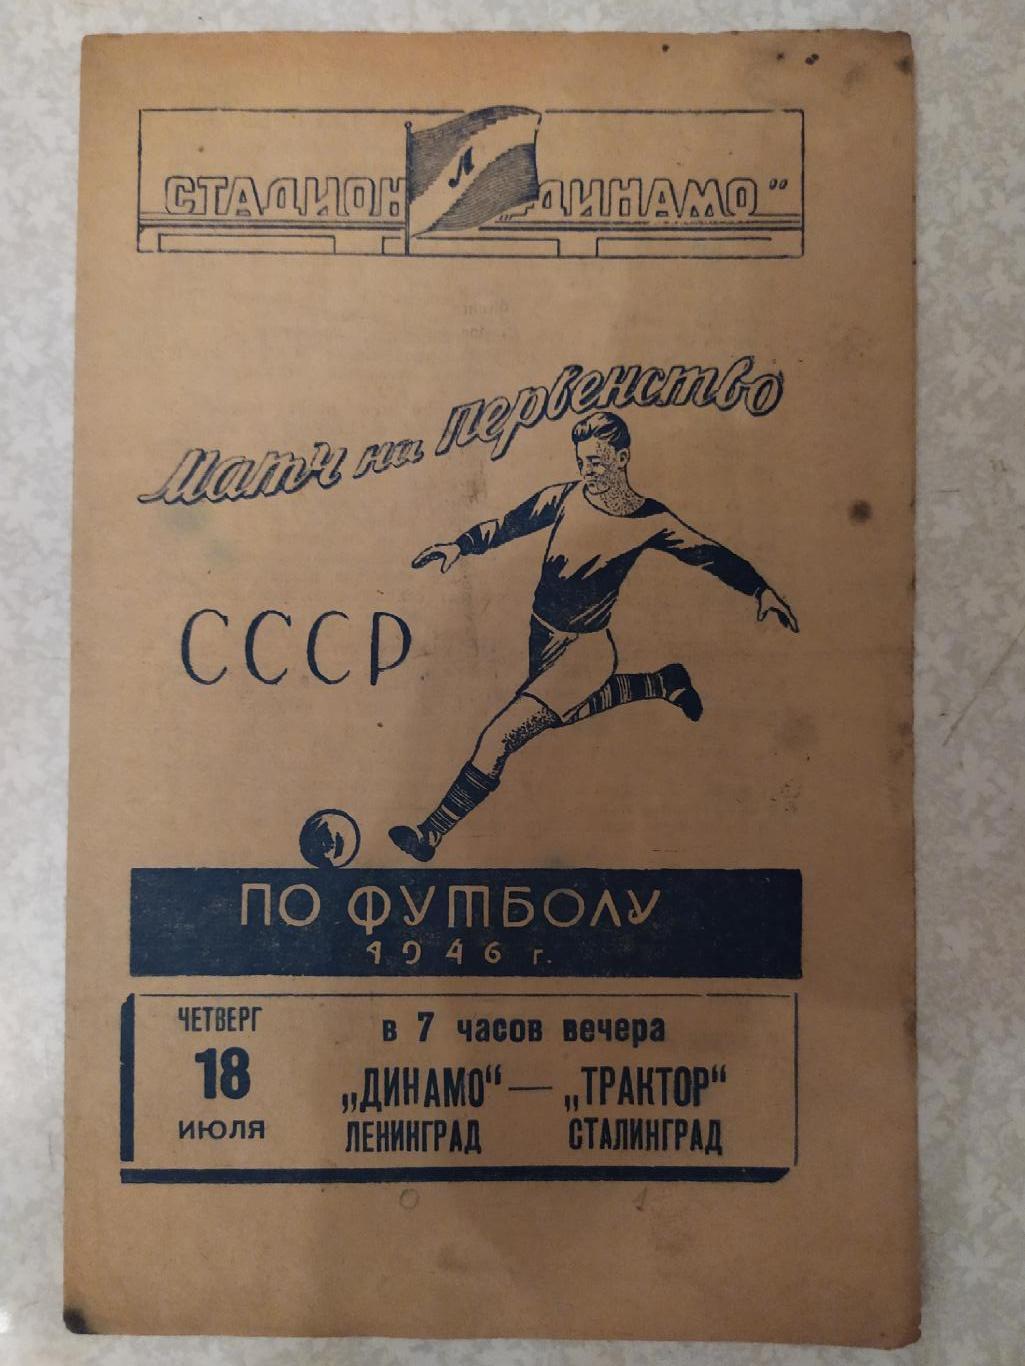 Динамо Ленинград/Санкт-Петербург -Трактор Сталинград/Волгоград 18.07.1946